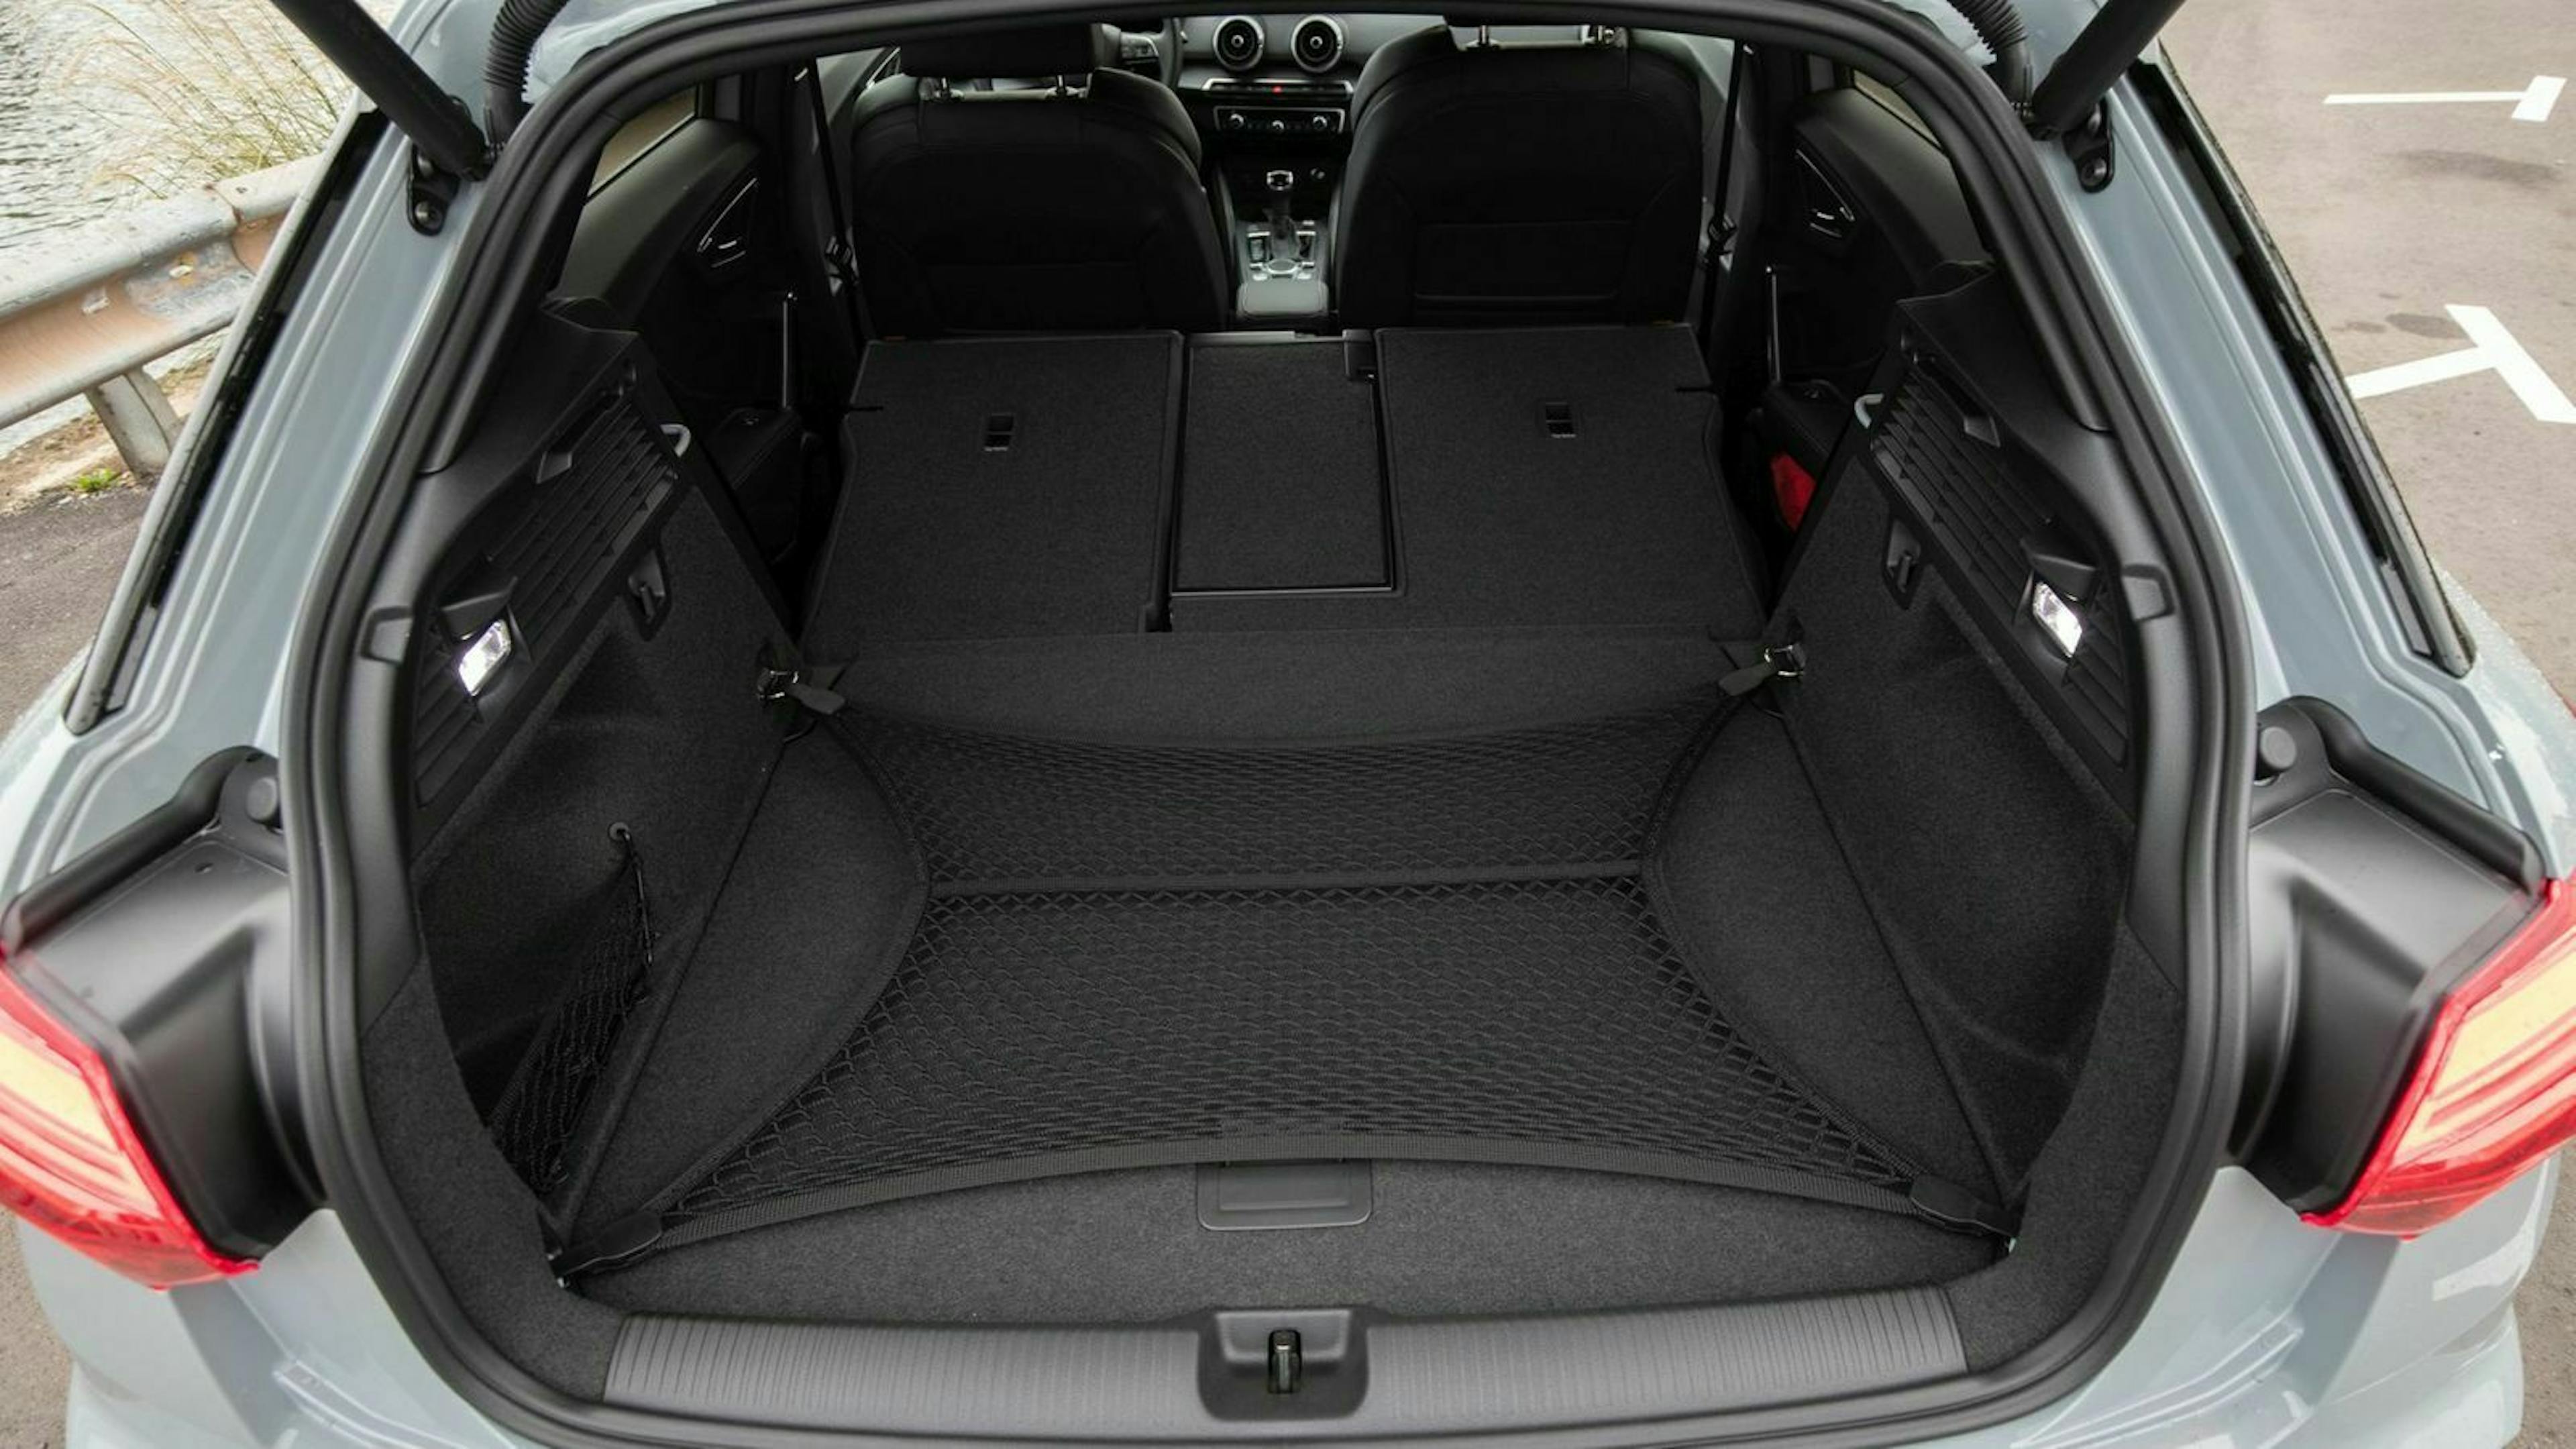 Zu sehen ist der Kofferraum des gelifteten Audi Q2